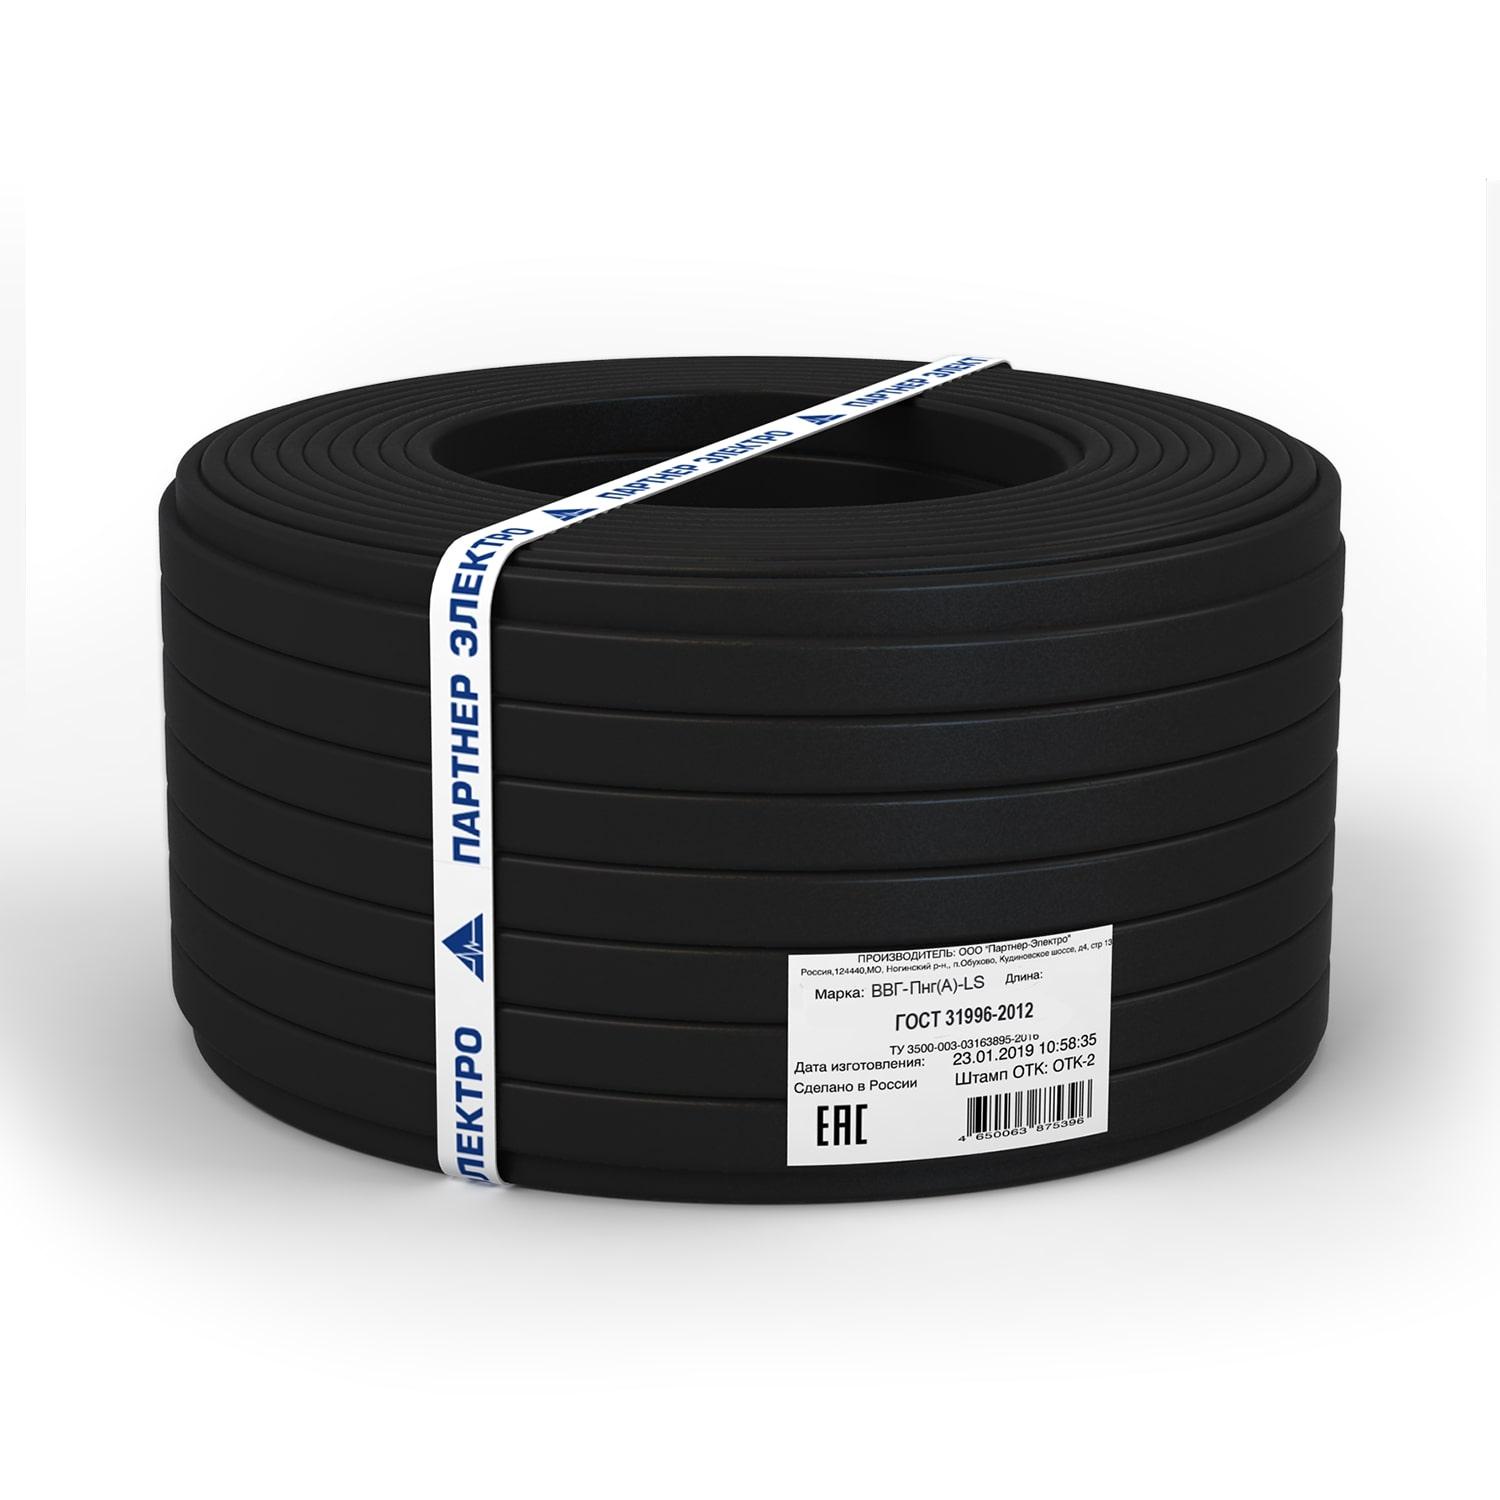 фото Силовой кабель Партнер-Электро Кабель ВВГ-ПнгГОСТ (А)-LS 2х2,5 ГОСТ (5м), черный